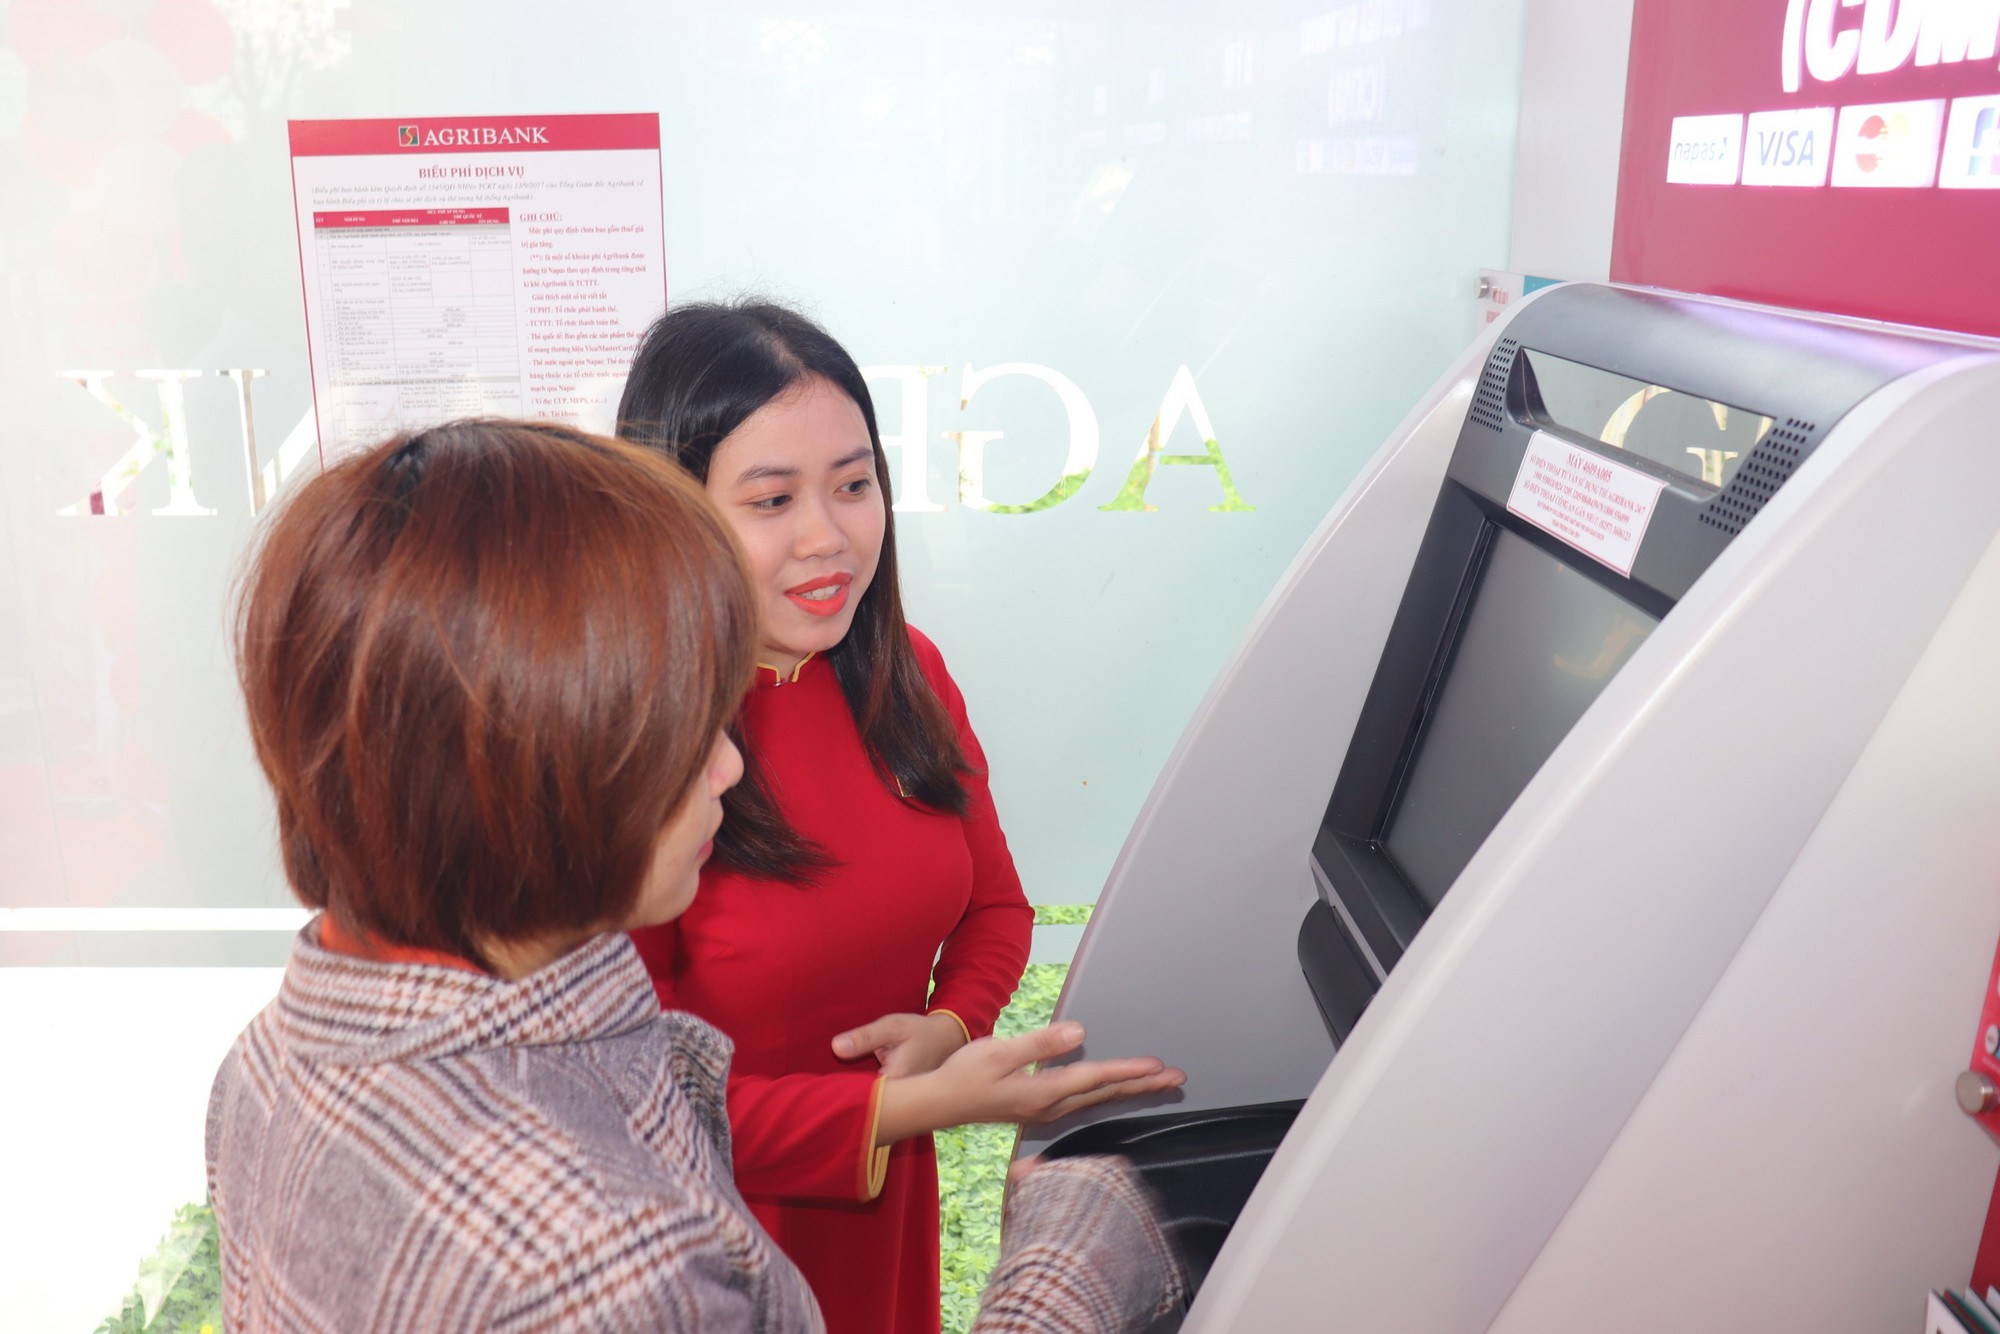 Agribank Phú Yên cung cấp dịch vụ ngân hàng hiện đại đến huyện miền núi Sơn Hòa - Ảnh 2.